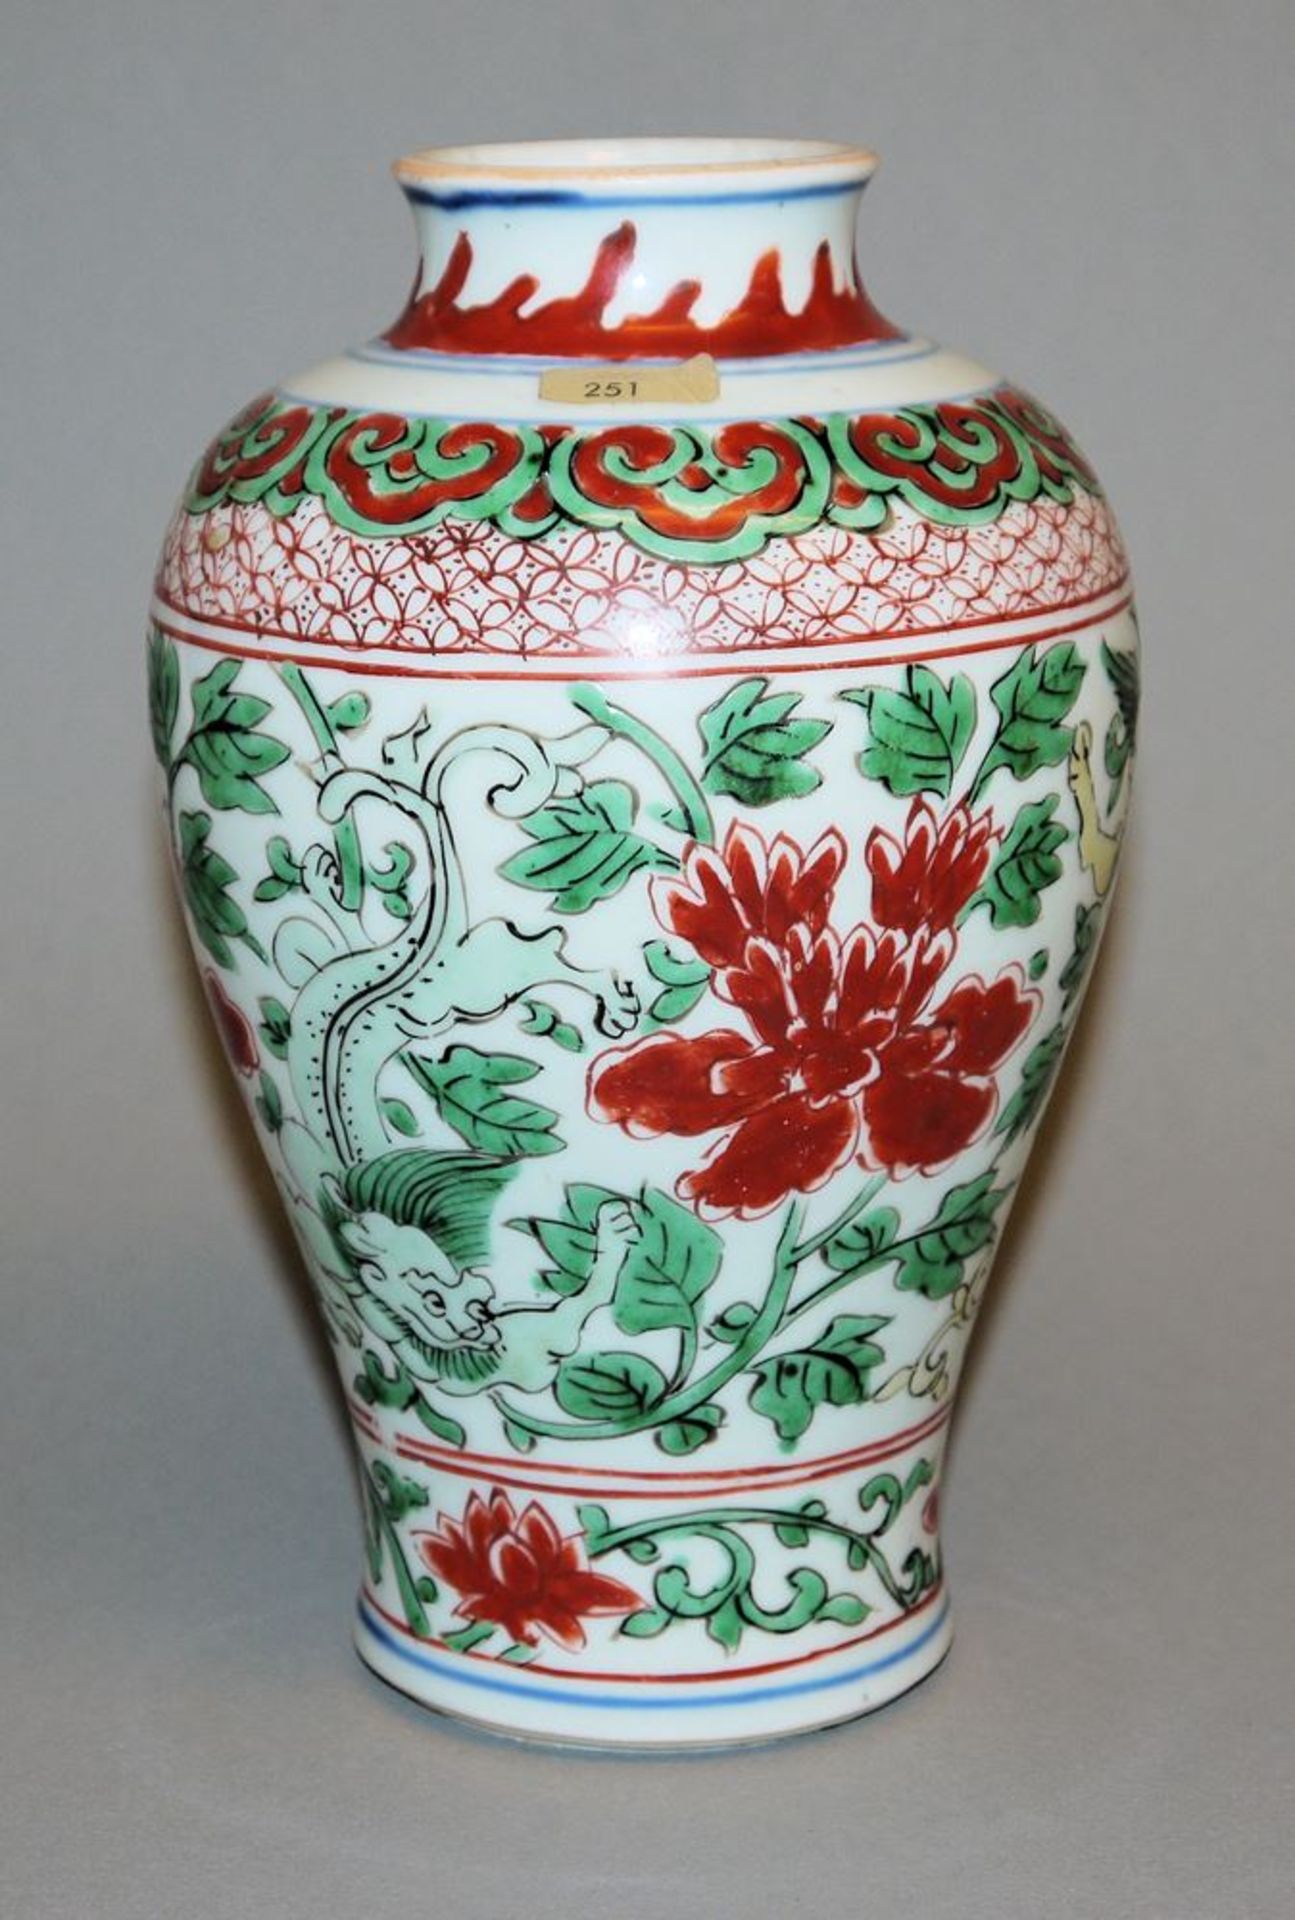 Wucai baluster vase of the Kangxi period, China circa 1700 - Image 2 of 3